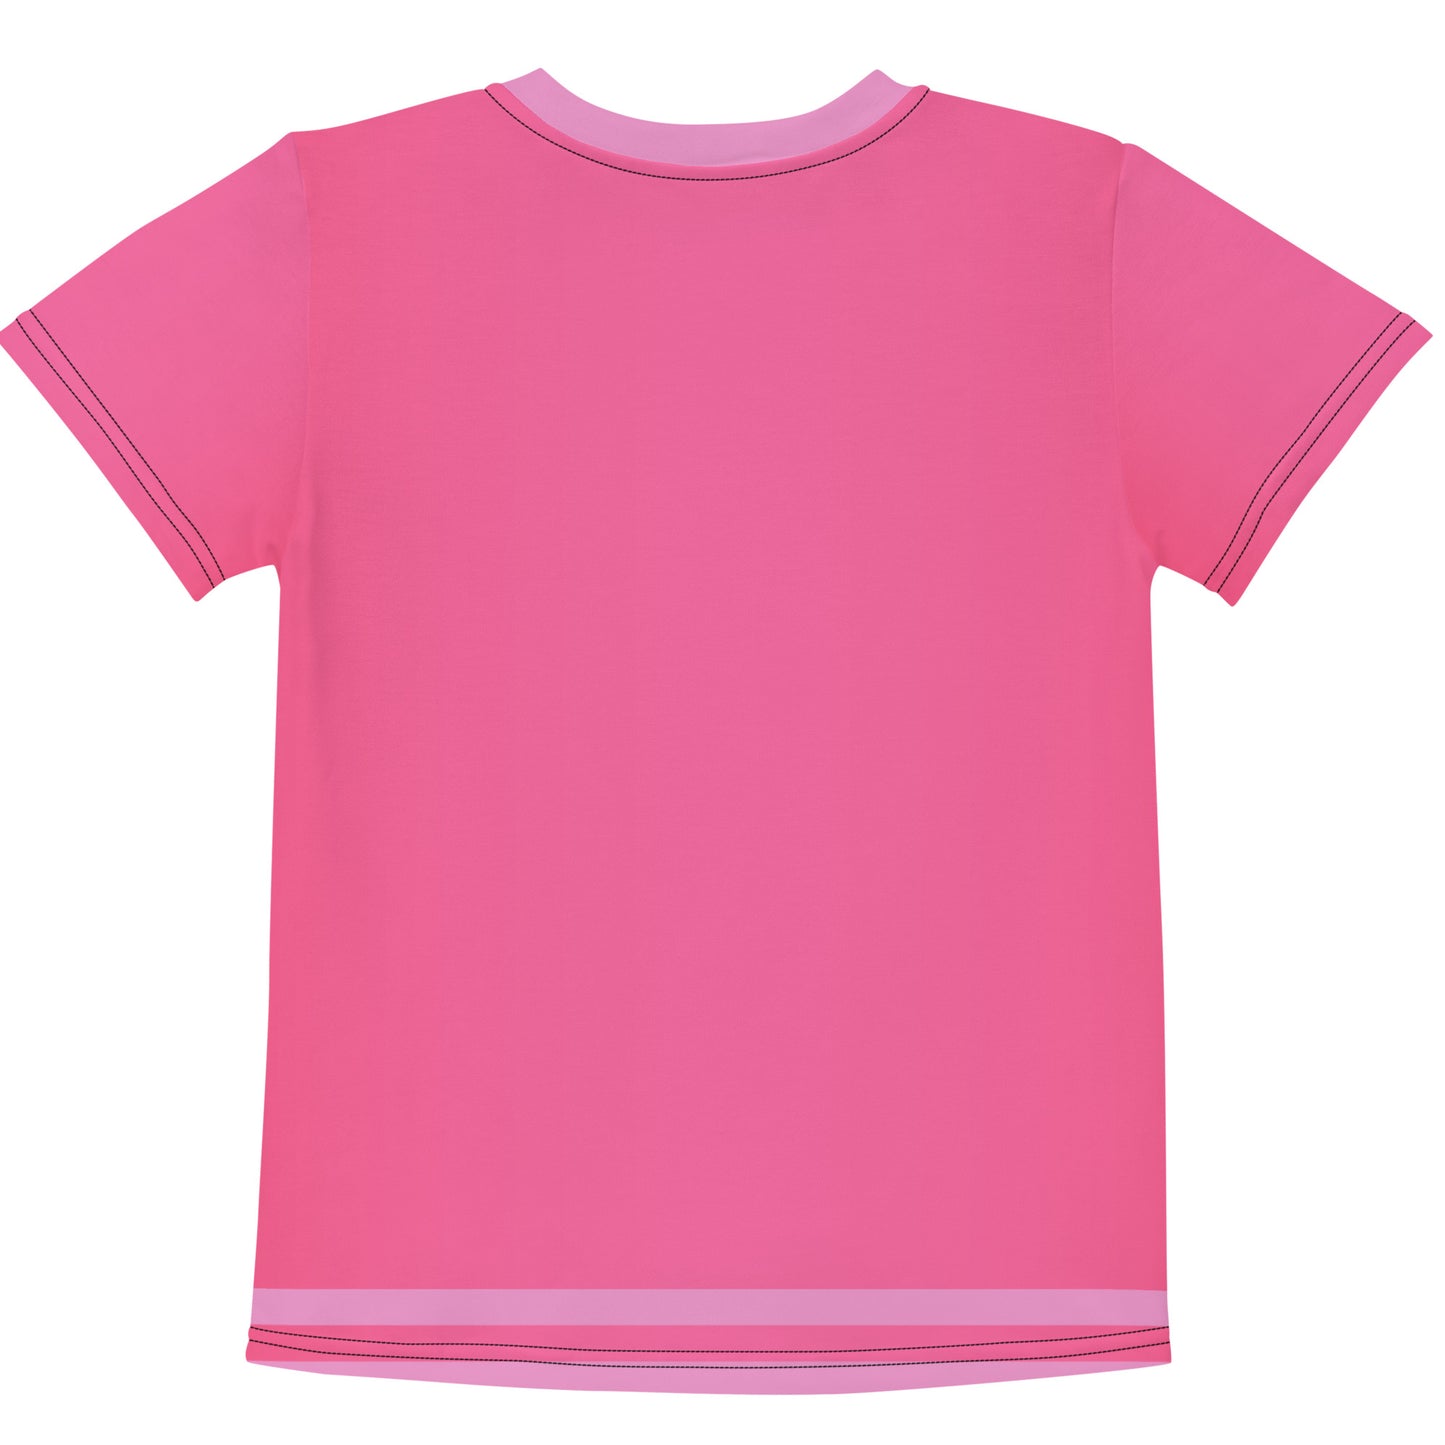 Sweet Pea in the Garden (Pink)Kids crew neck t-shirt